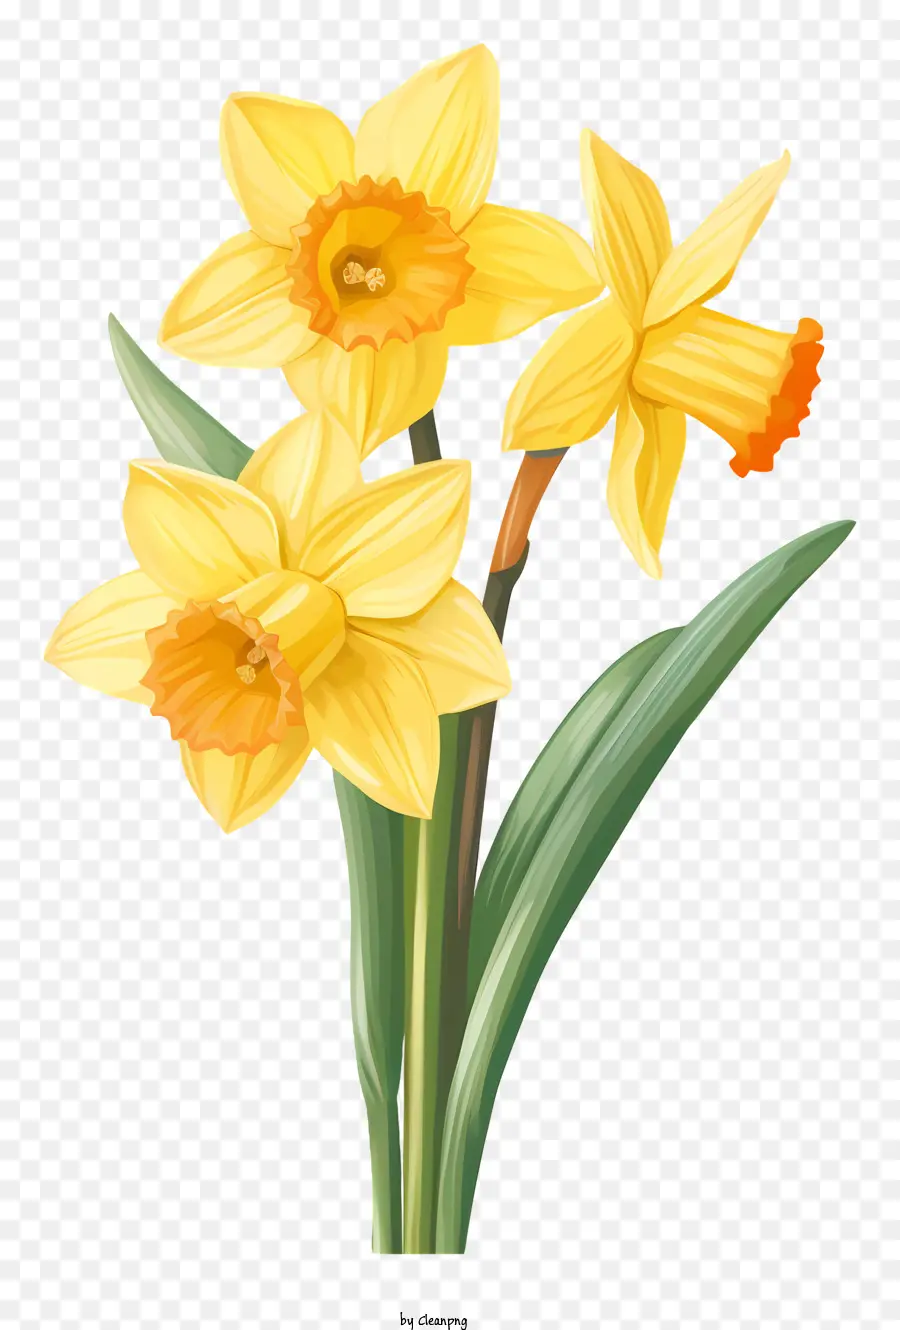 la disposizione dei fiori - Narcisi in vaso con petali gialli